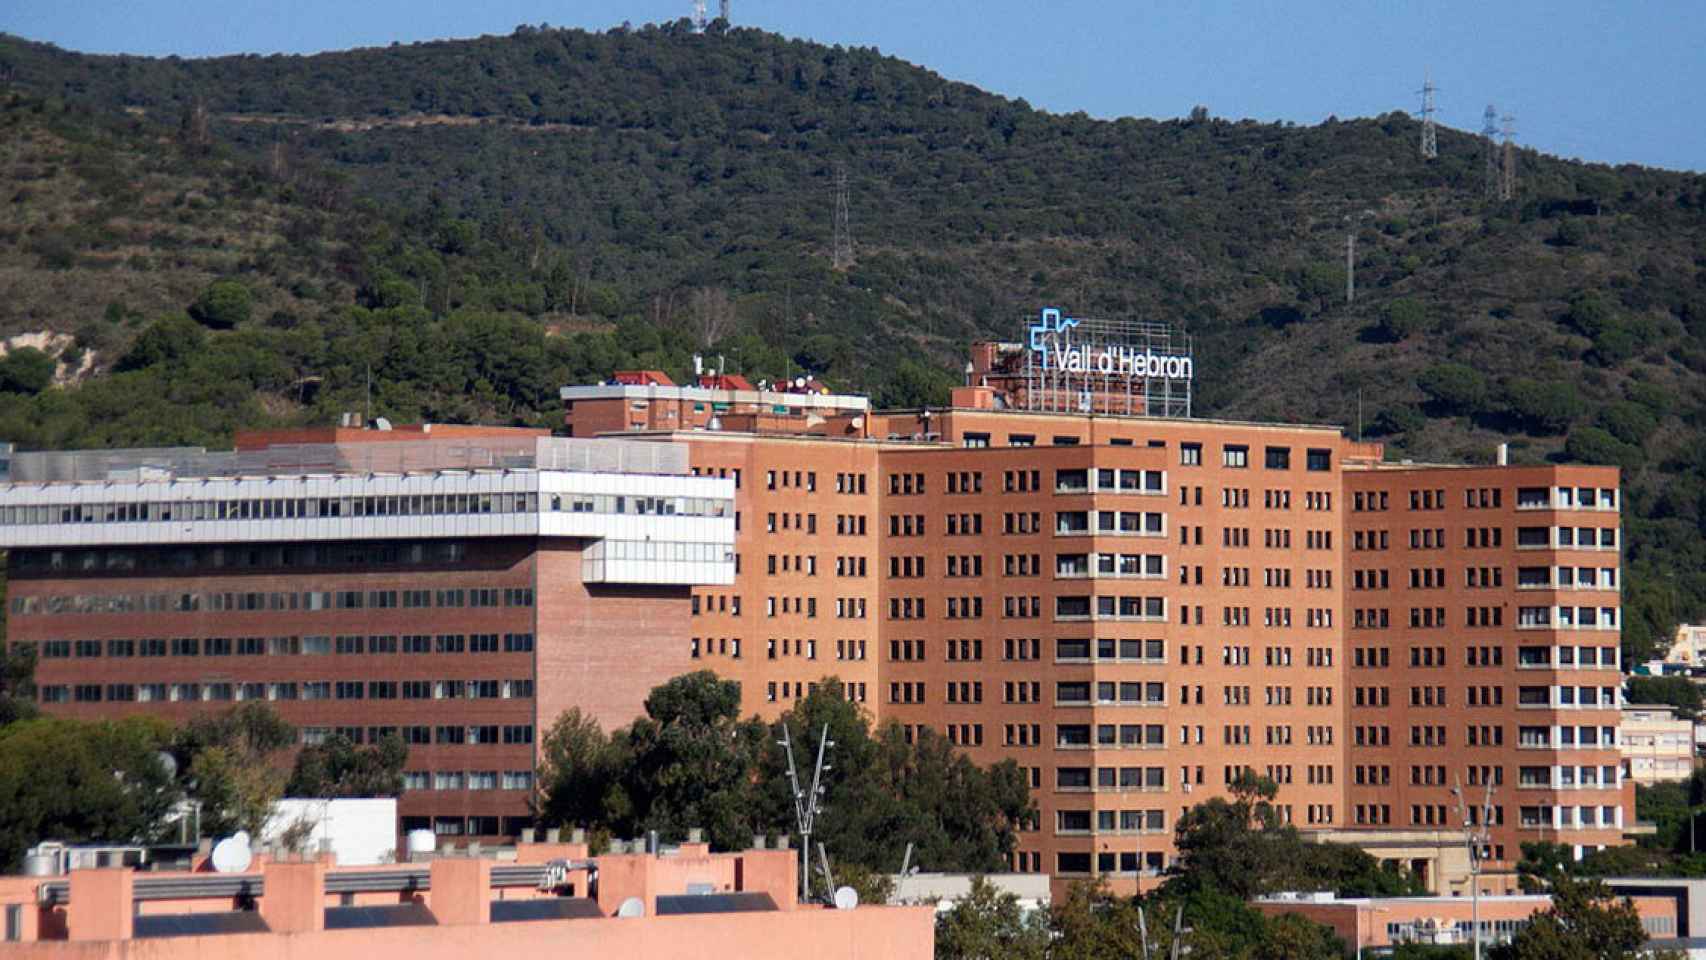 Imagen aérea del Hospital Vall d'Hebron / Cedida